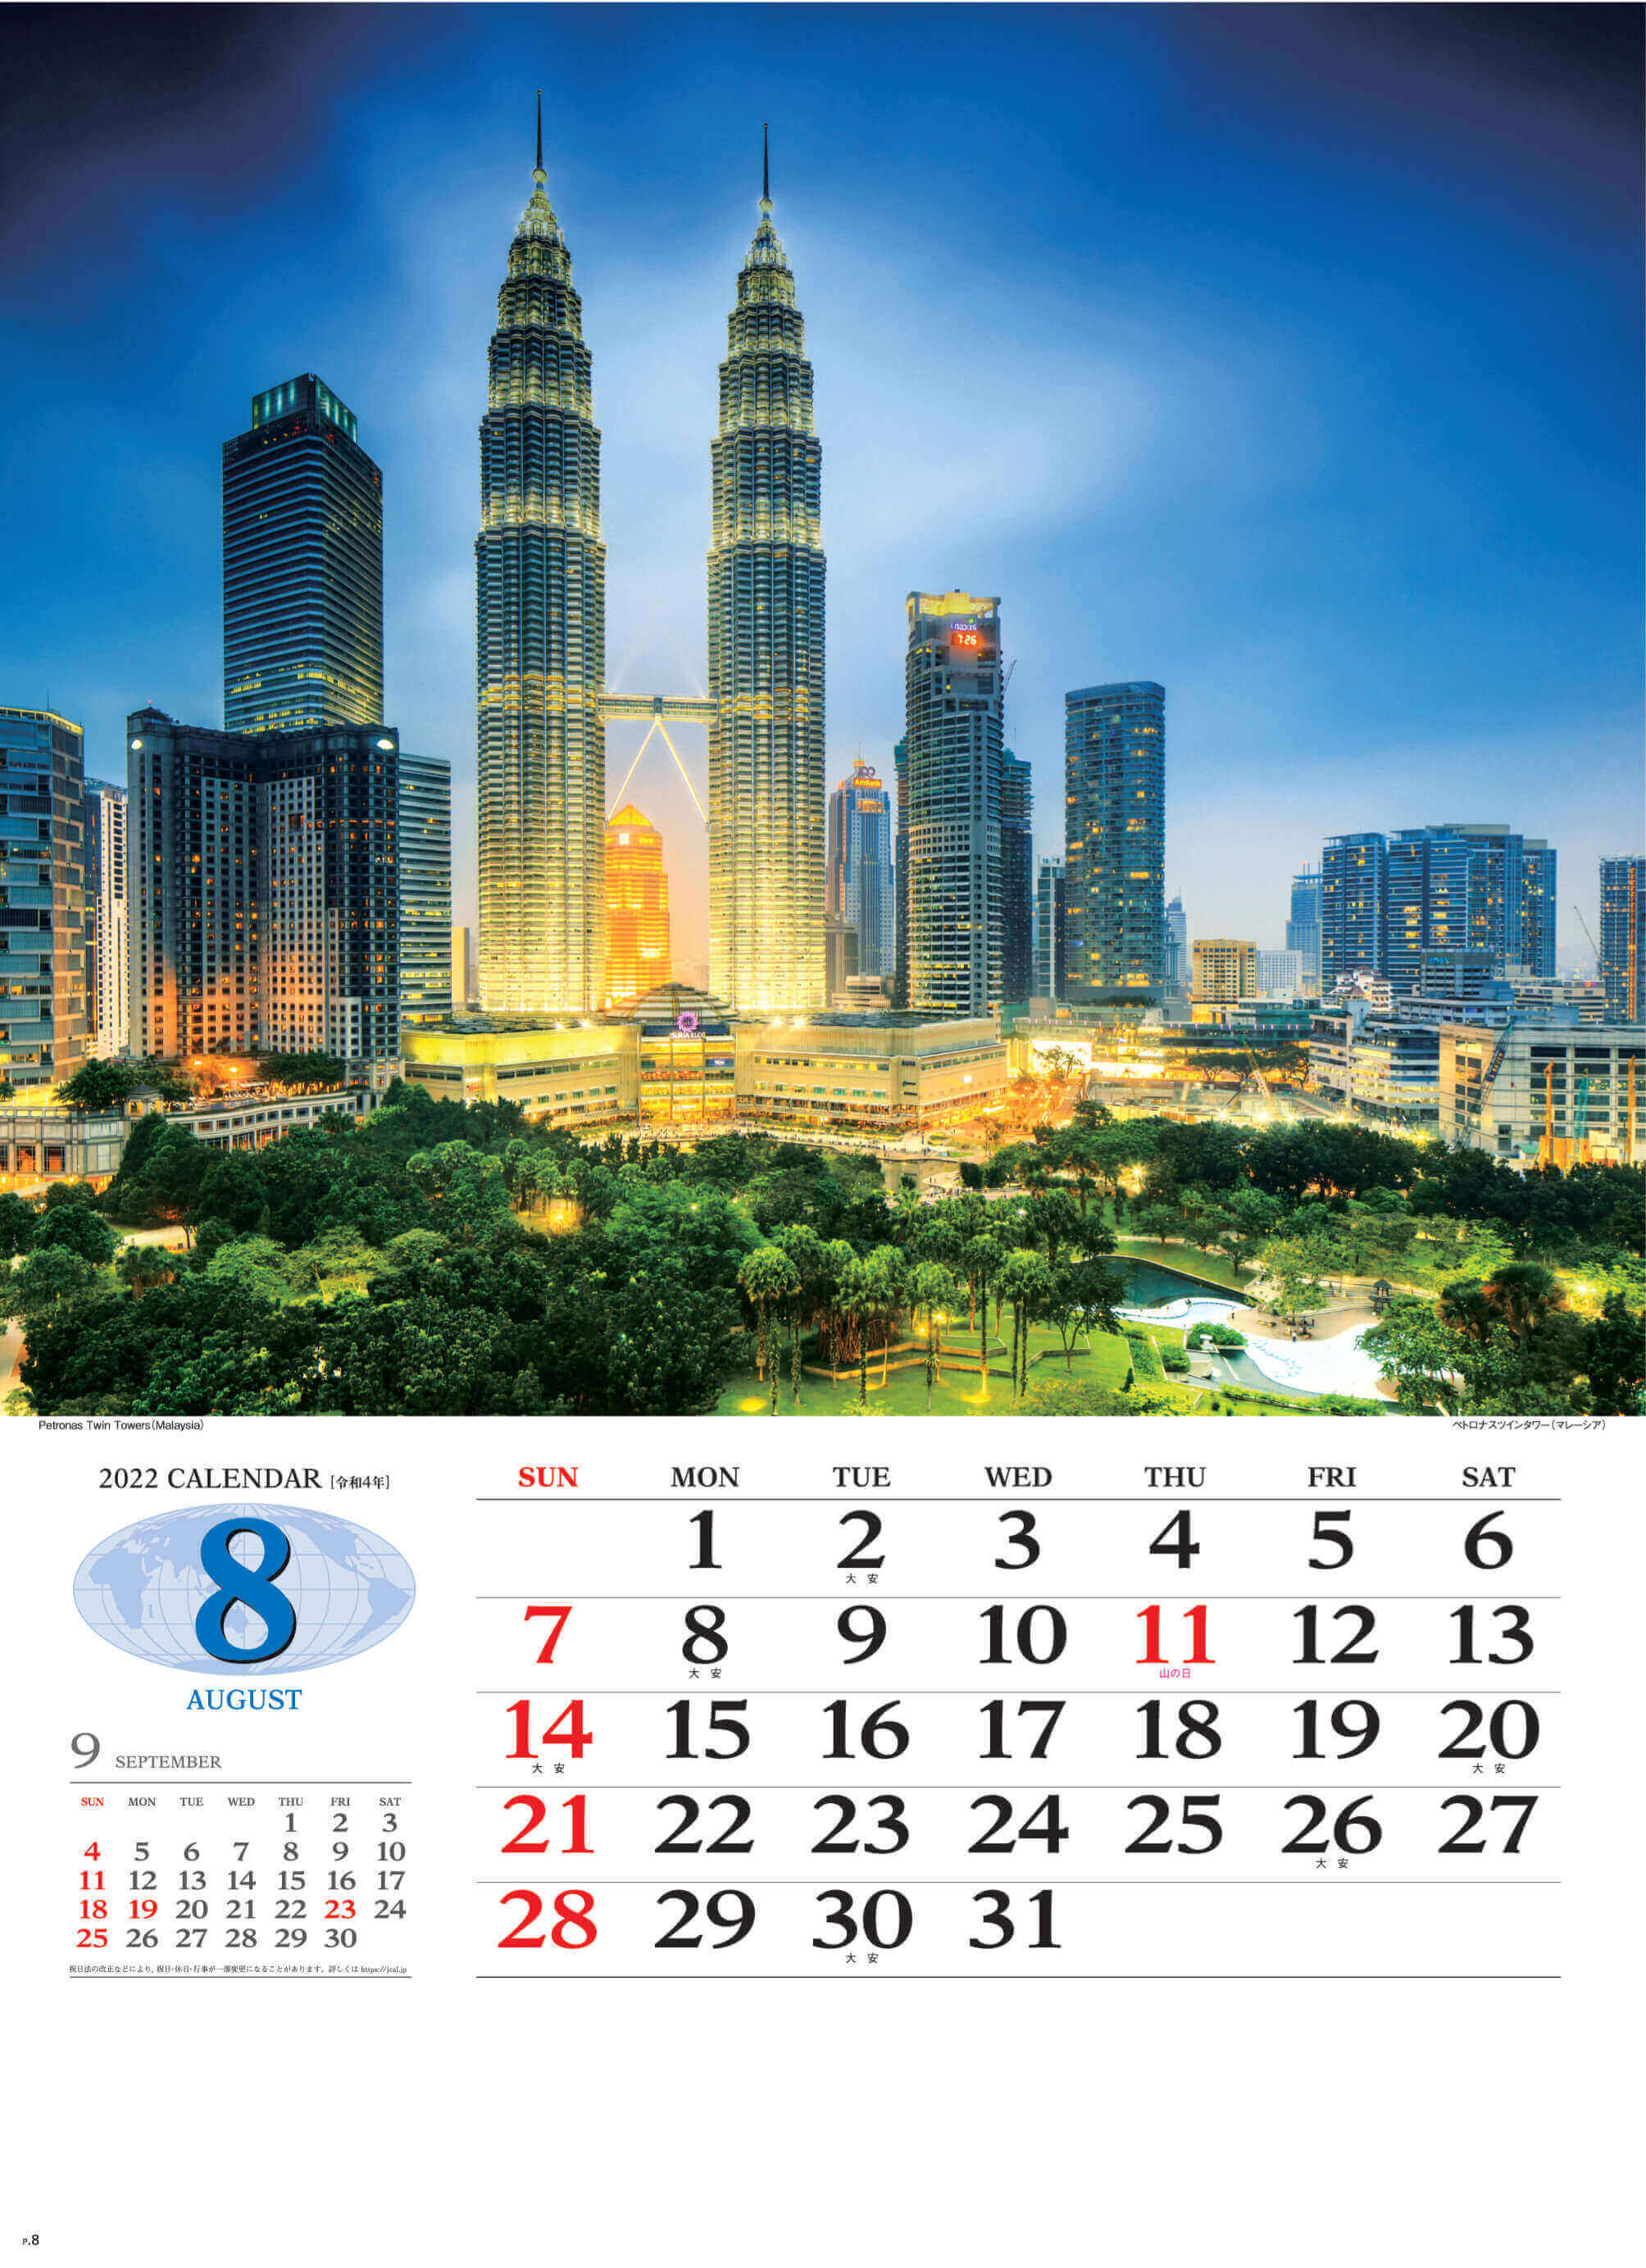 8月 ペトロナスツインタワー マレーシア 世界の景観 2022年カレンダーの画像